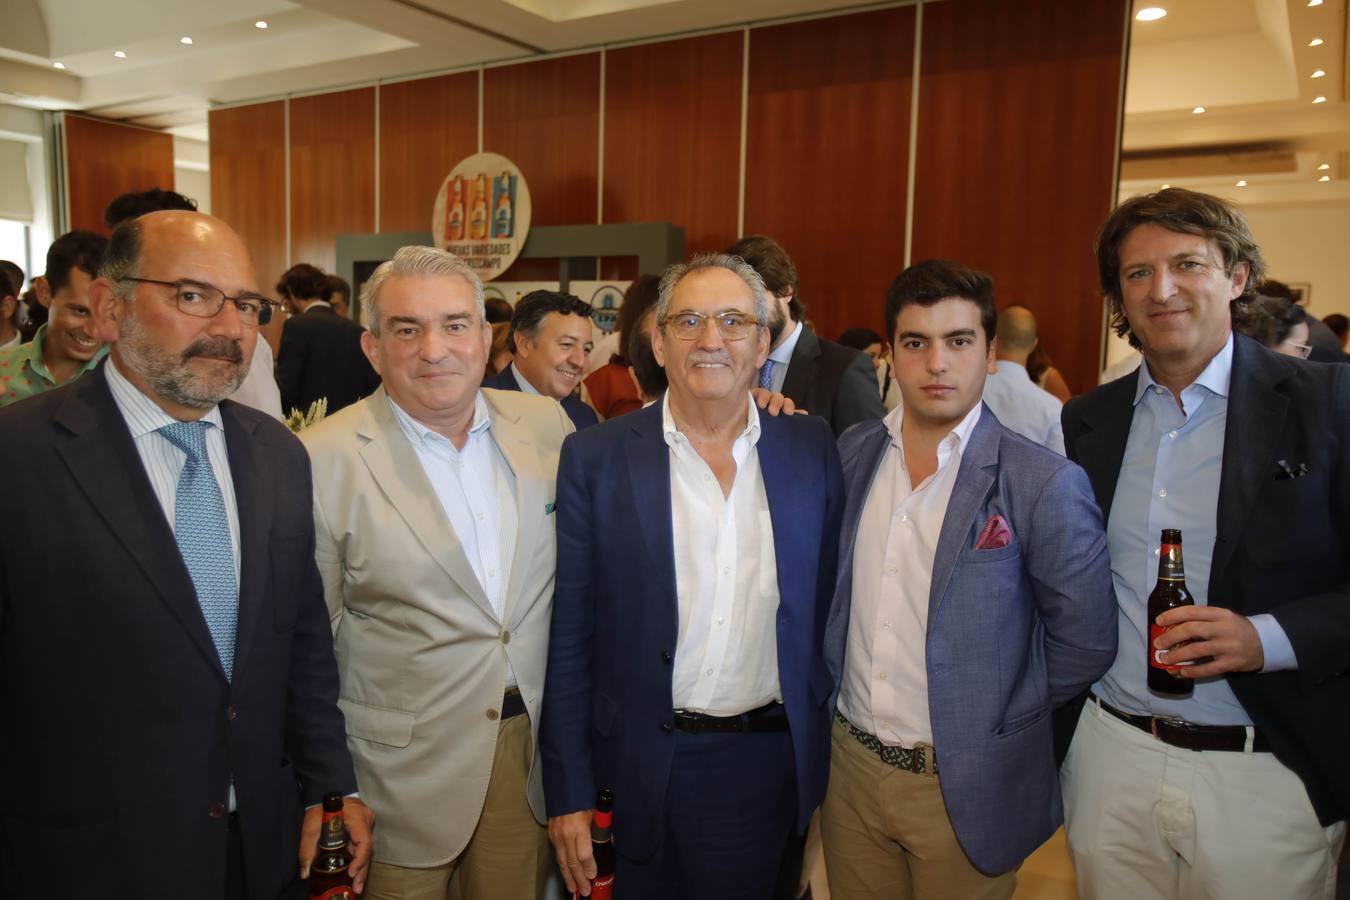 Antonio Pardo, Ramón López de Tejada, Antonio Castro, Ignacio López de Tejada y Paco Ybarra